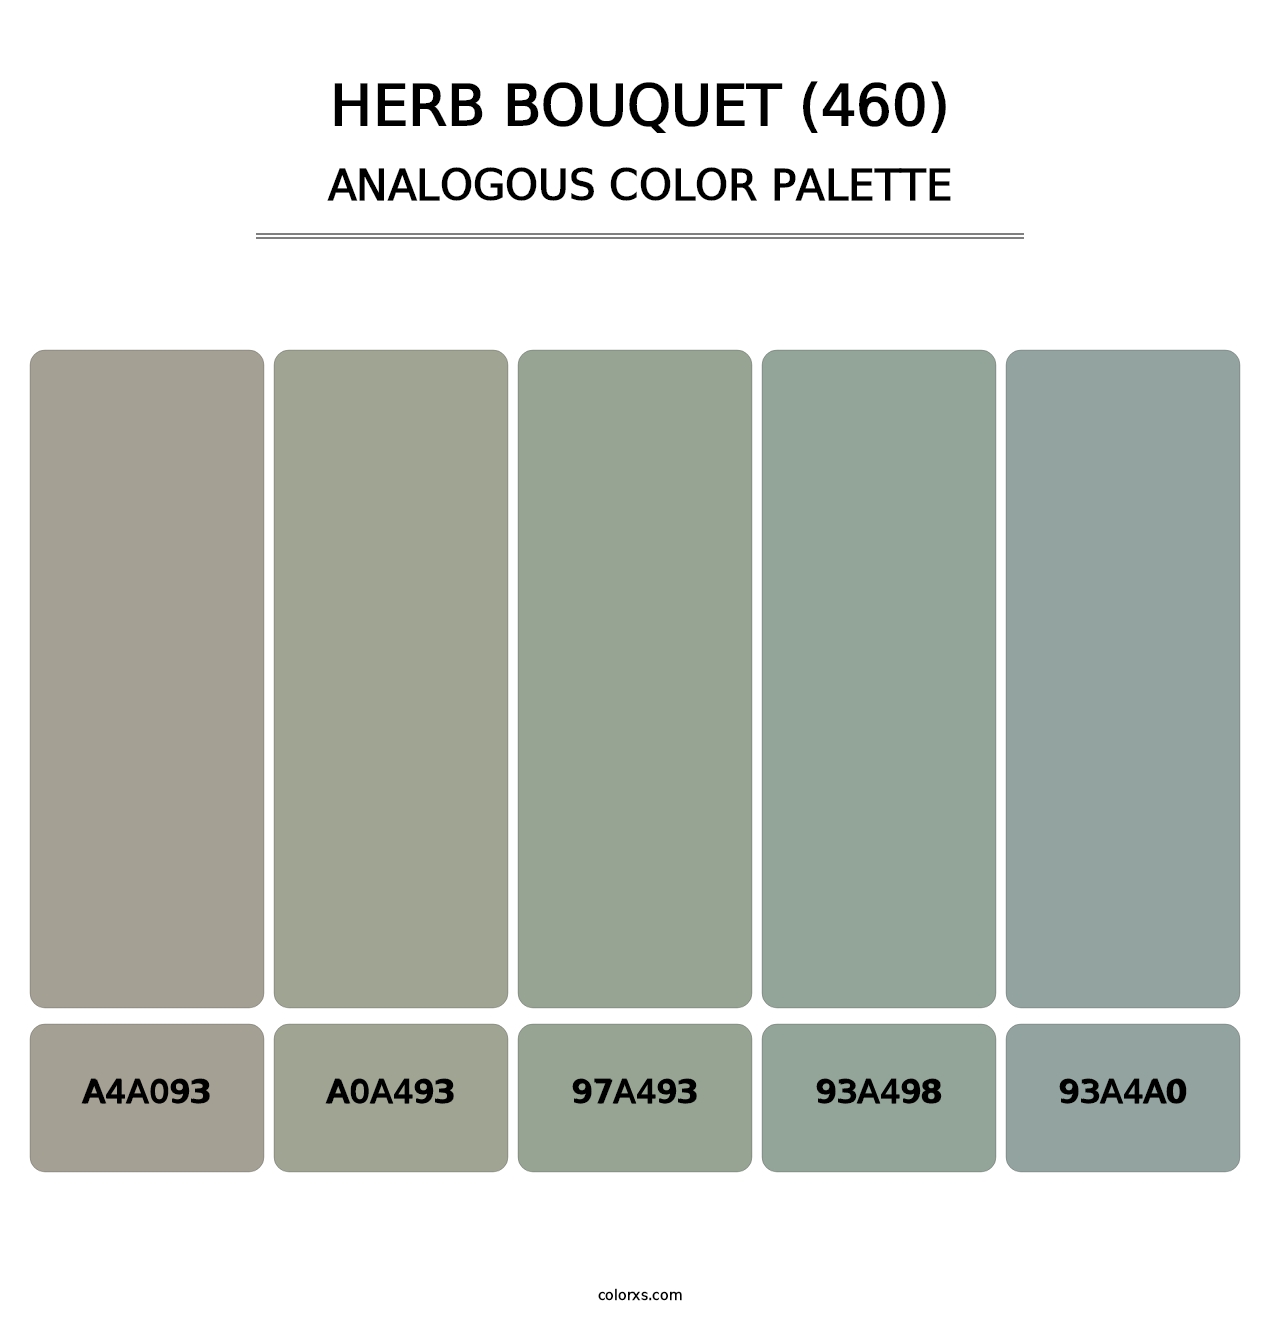 Herb Bouquet (460) - Analogous Color Palette